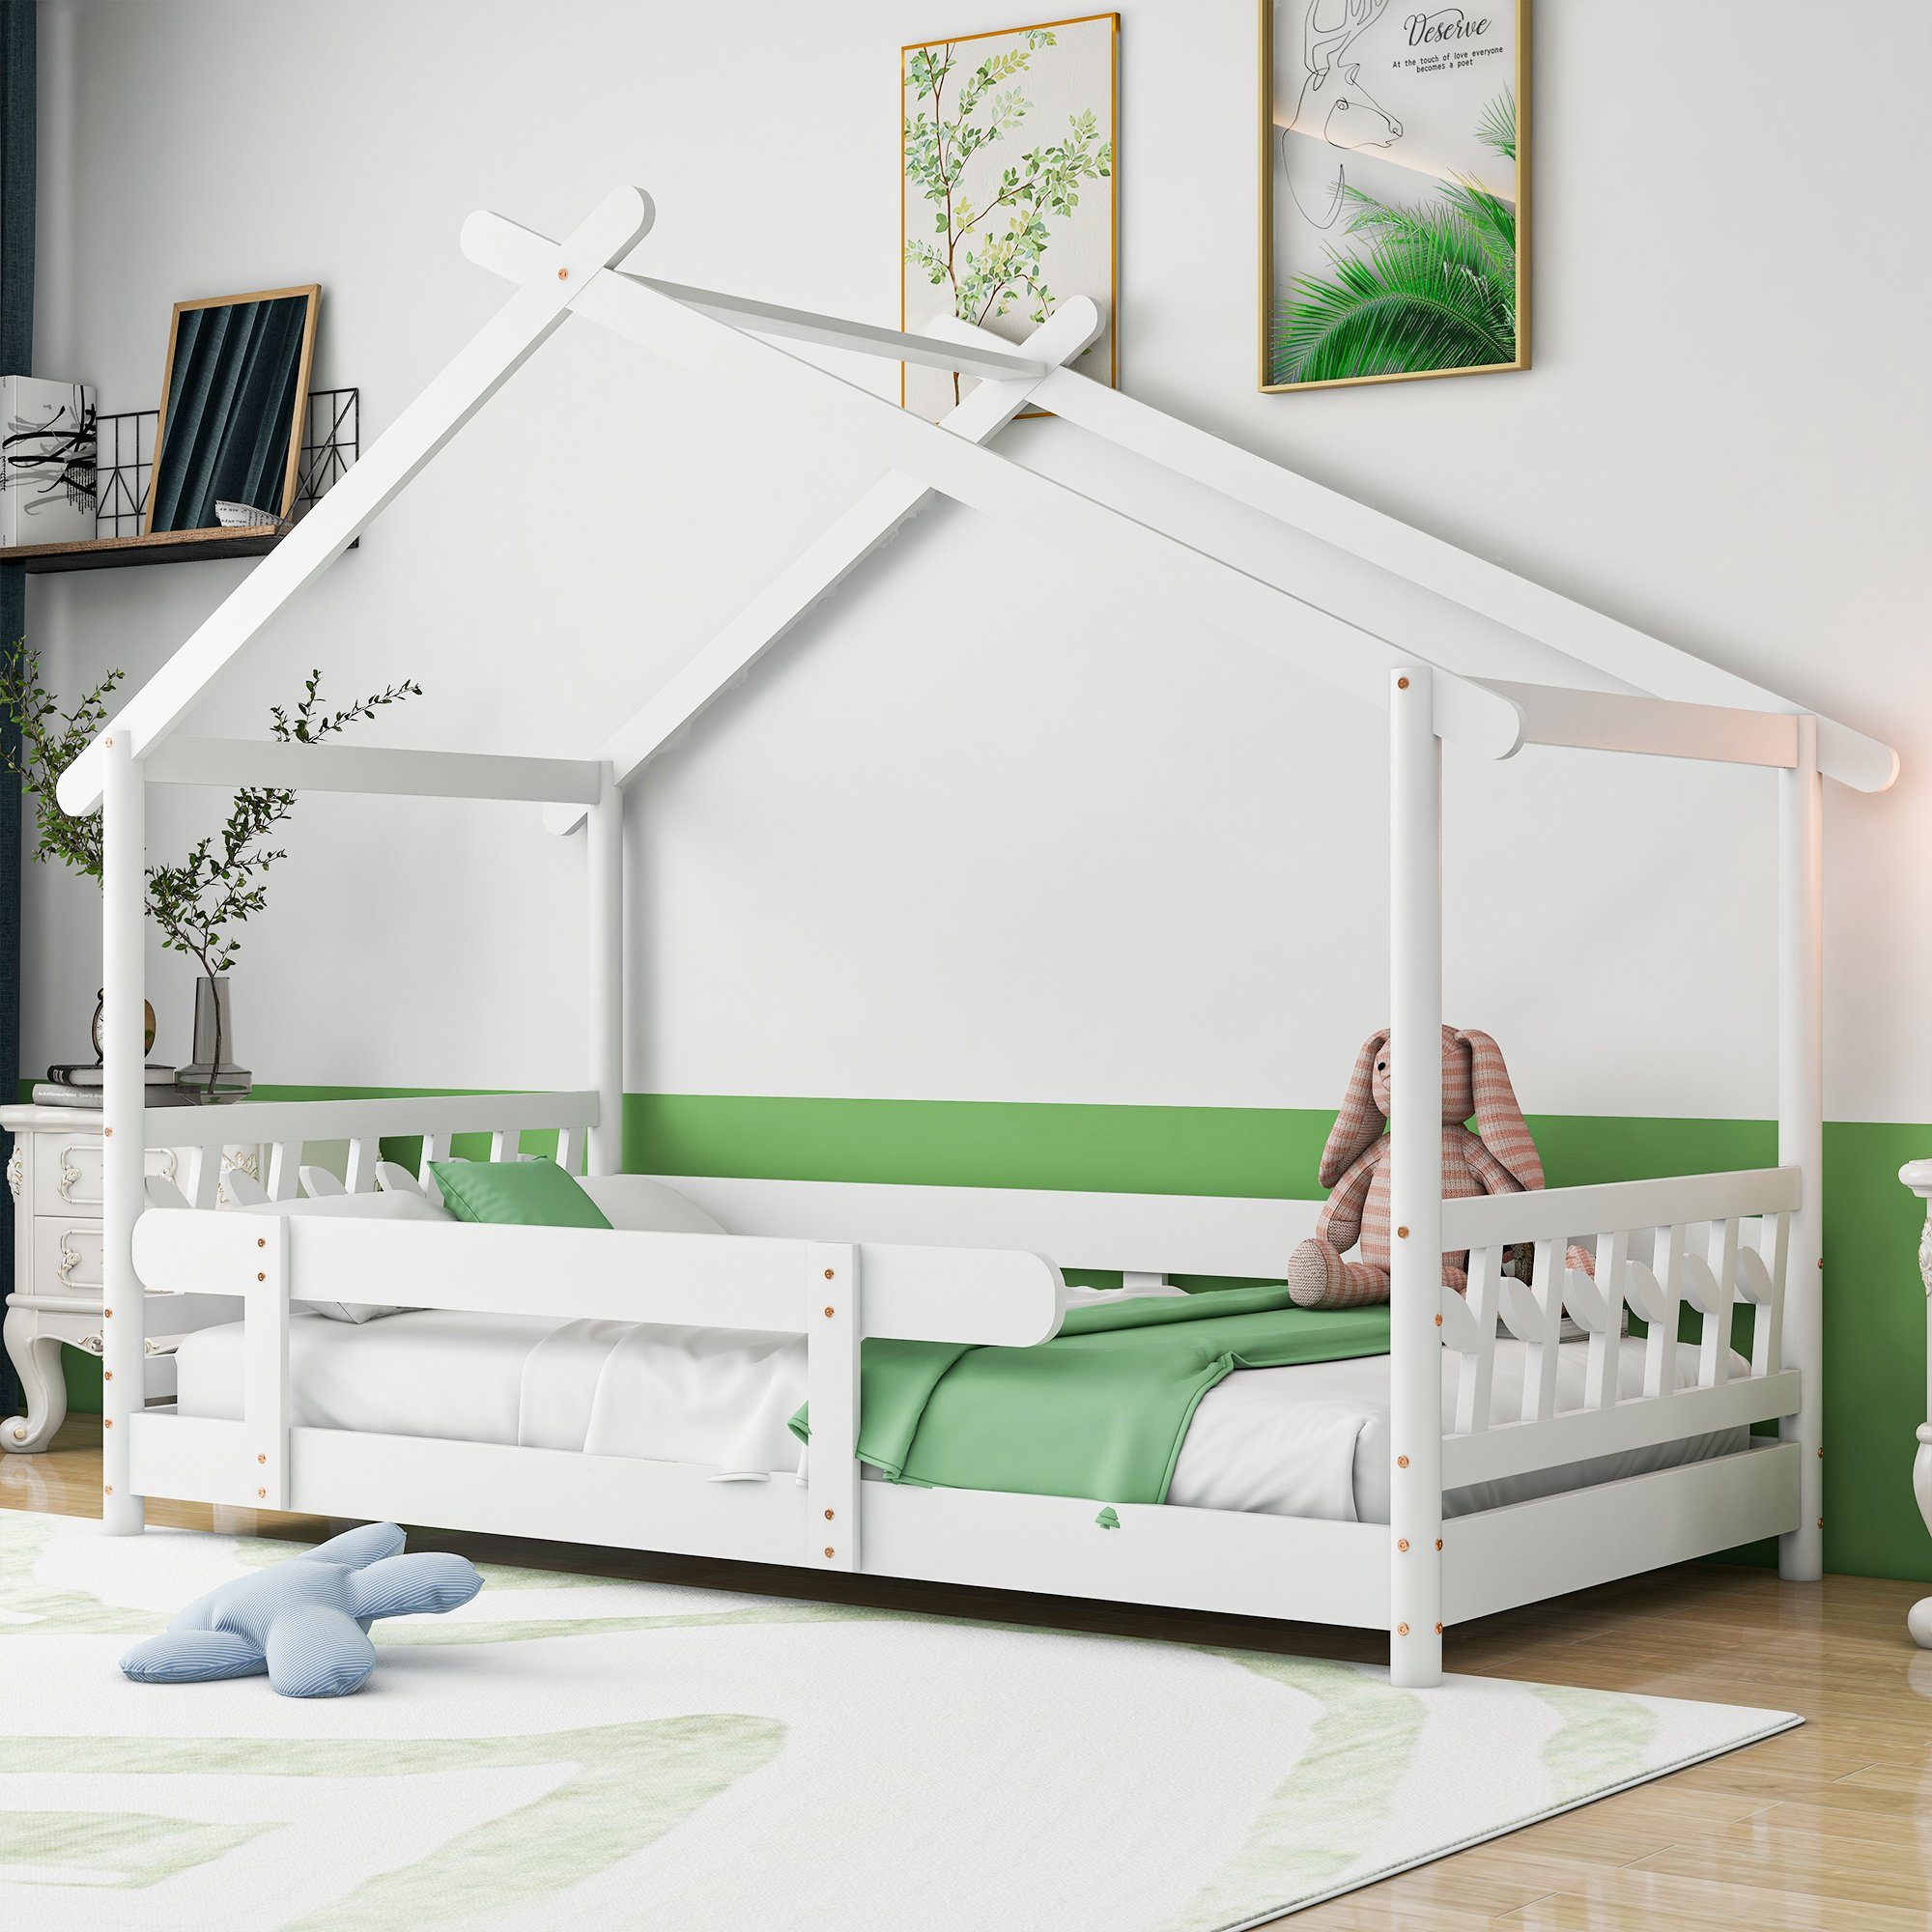 Flieks Kinderbett Dream high, Schönes Hausbett mit Rausfallschutz 90x190cm weiß